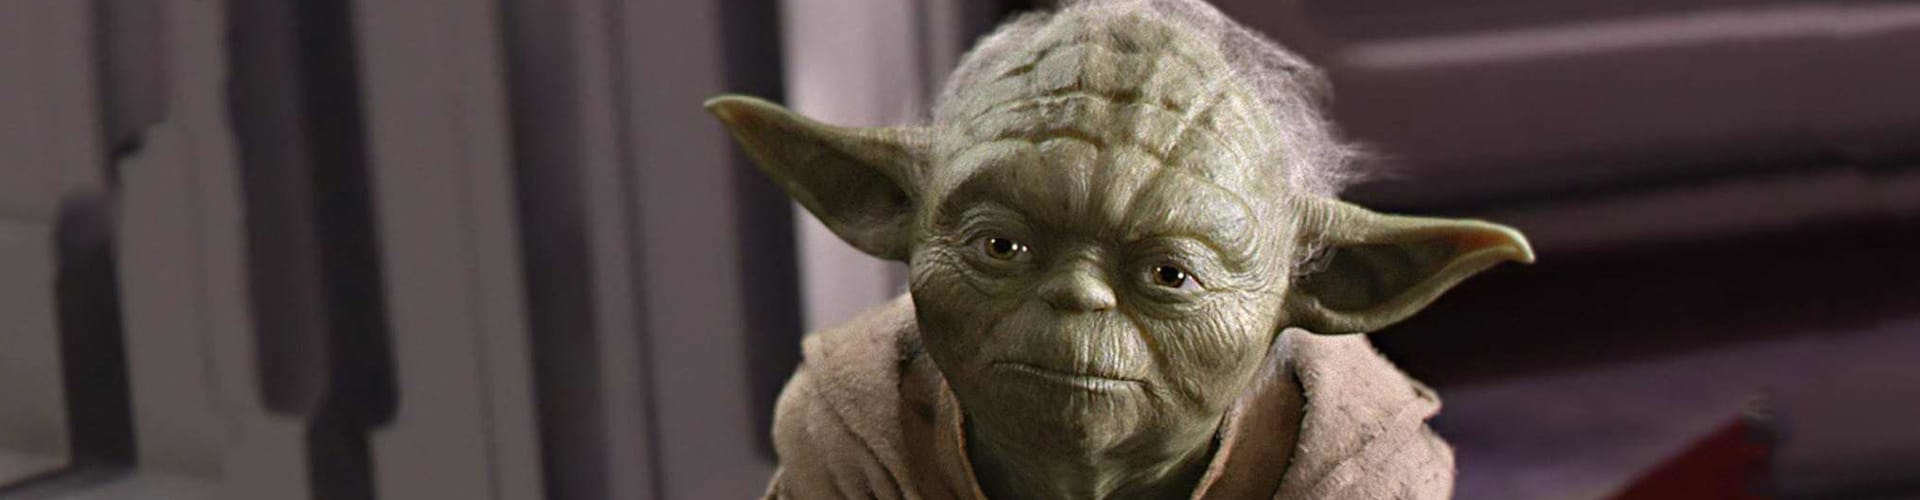 Maître Yoda, le mentor